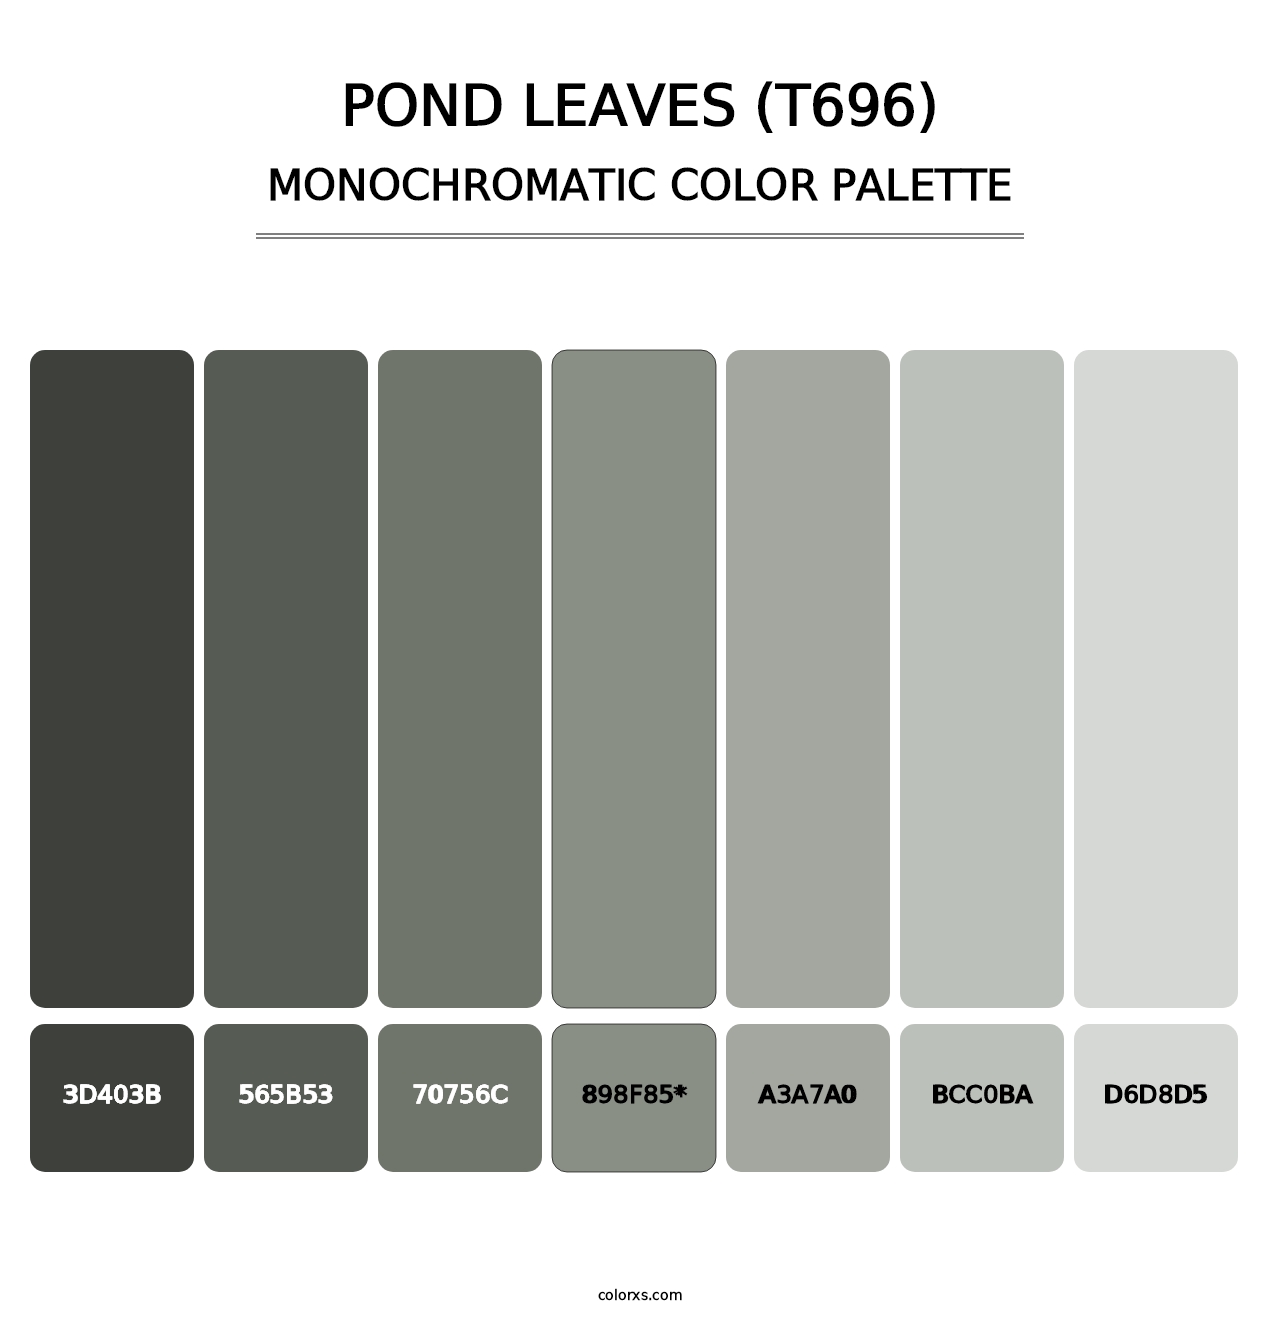 Pond Leaves (T696) - Monochromatic Color Palette